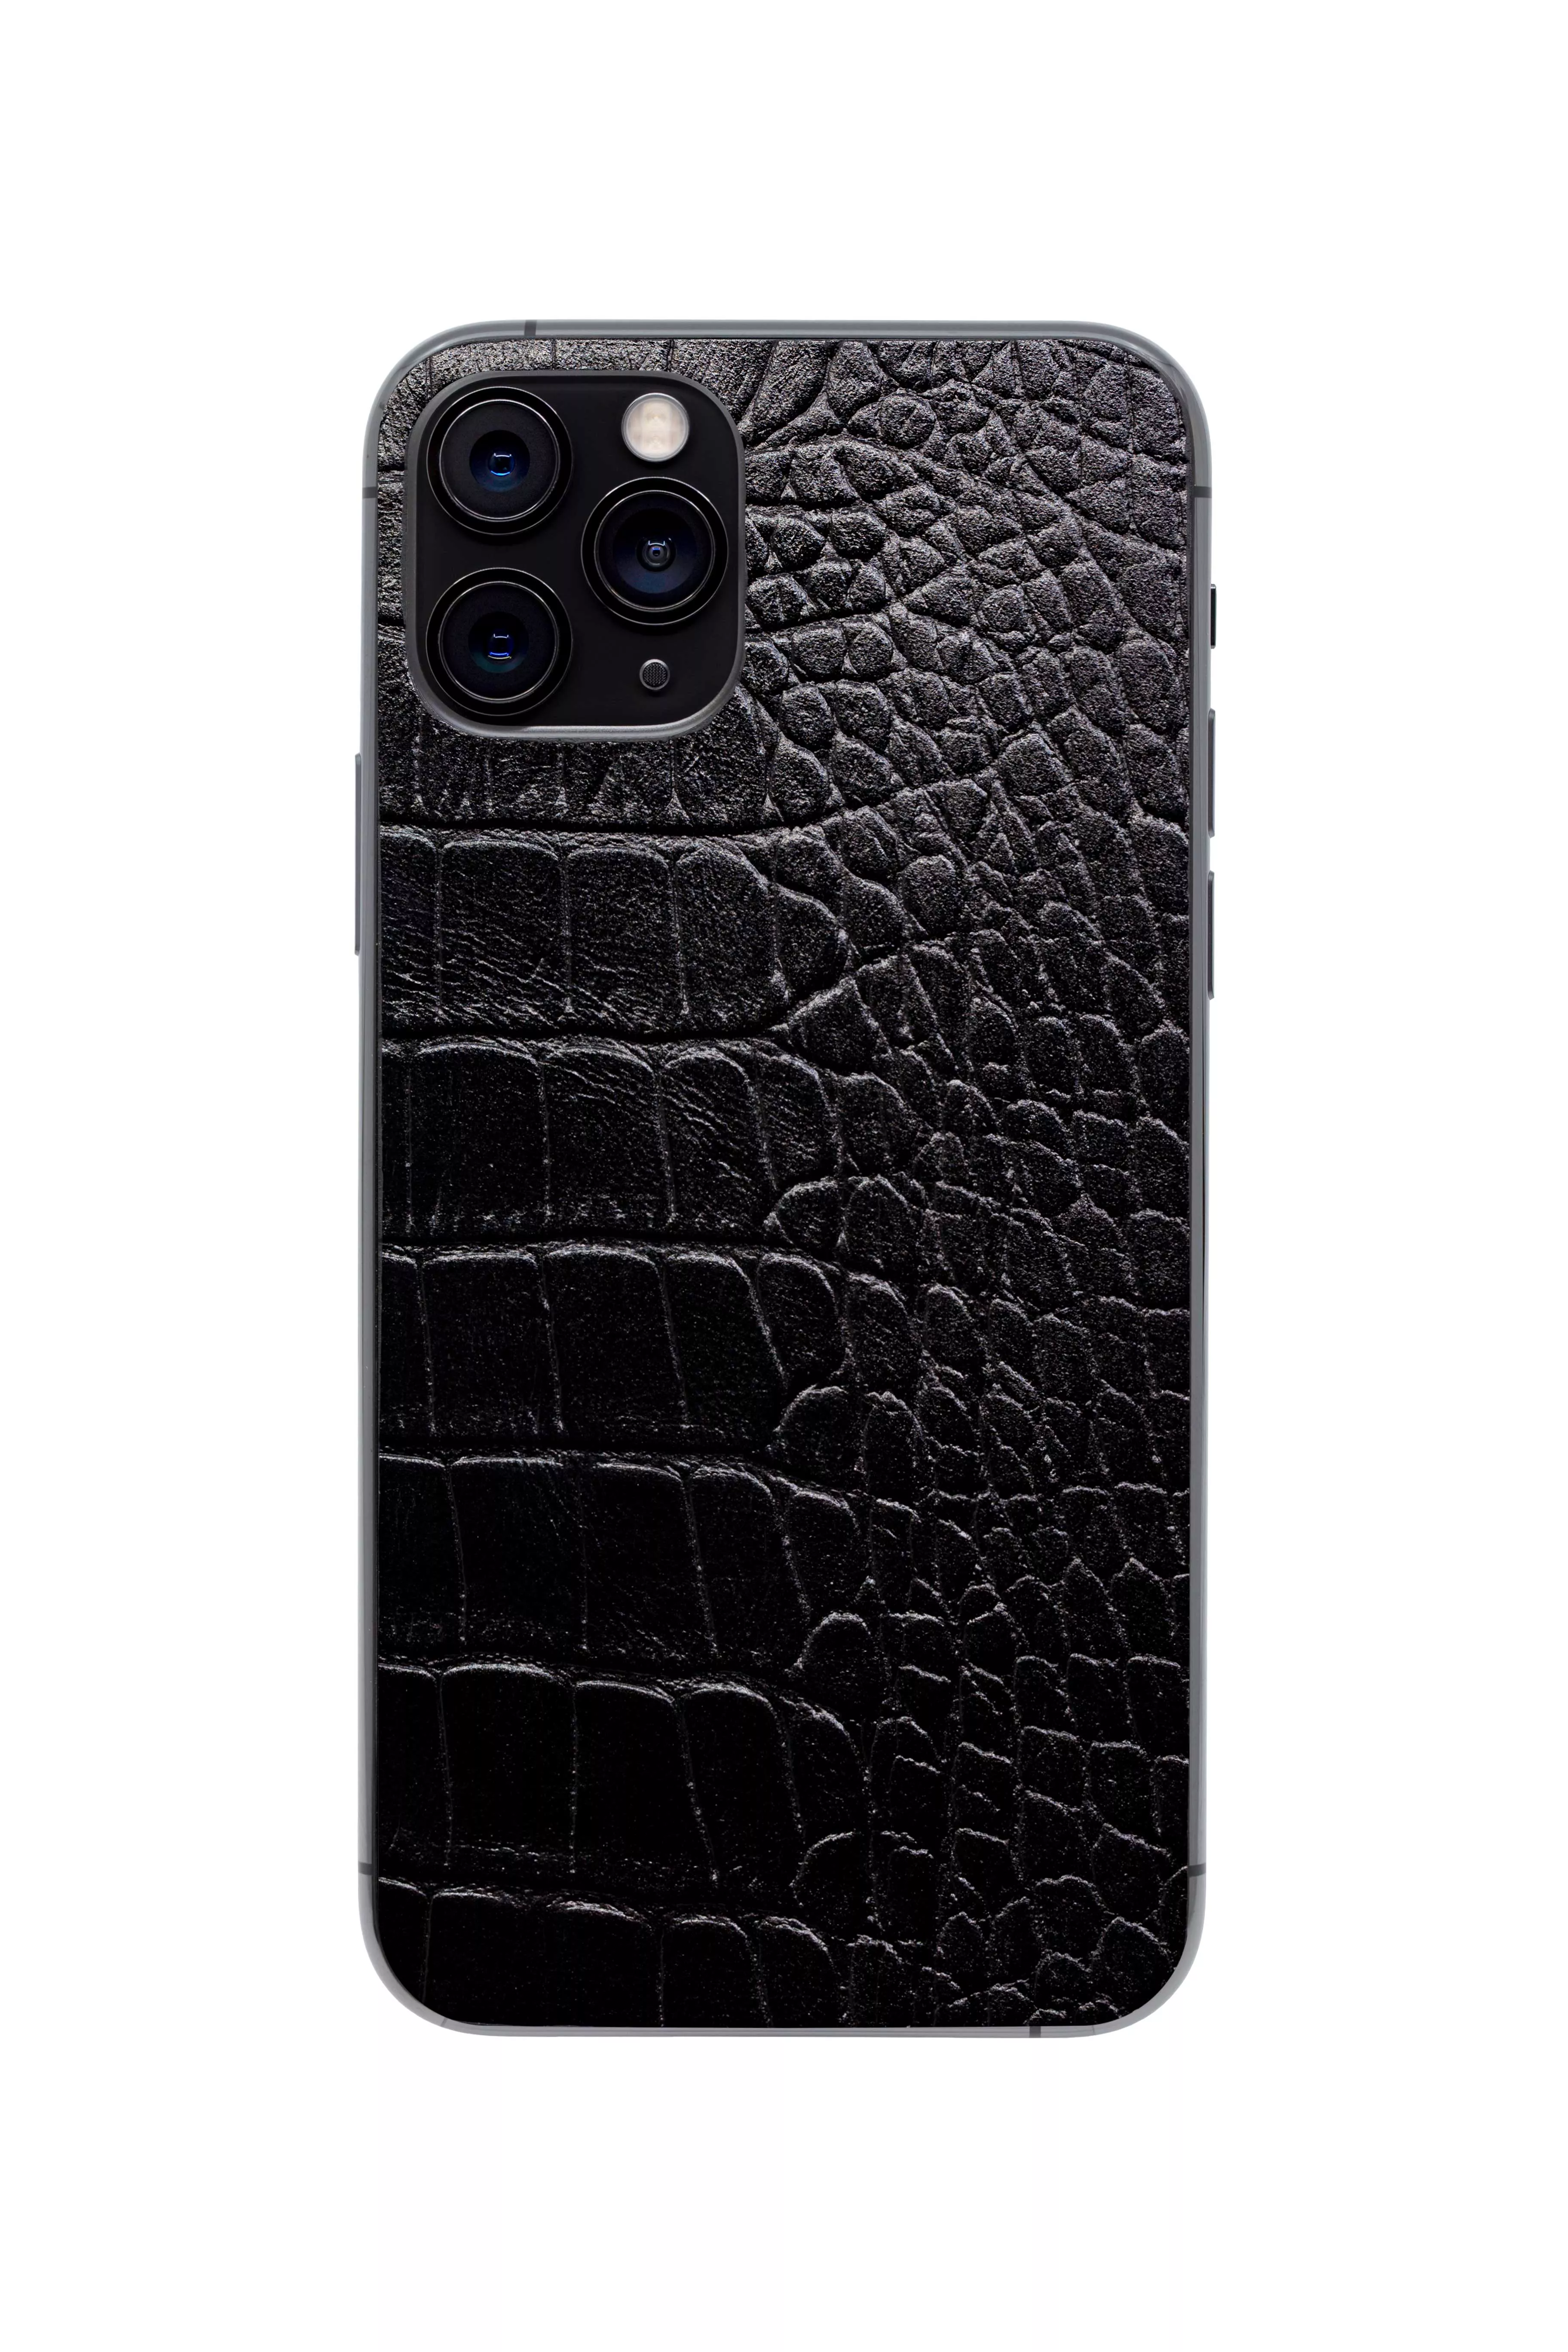 Купить Защитная наклейка из натуральной кожи для iPhone 11 Pro, Вид Черный 3 в Сочи. Вид 1